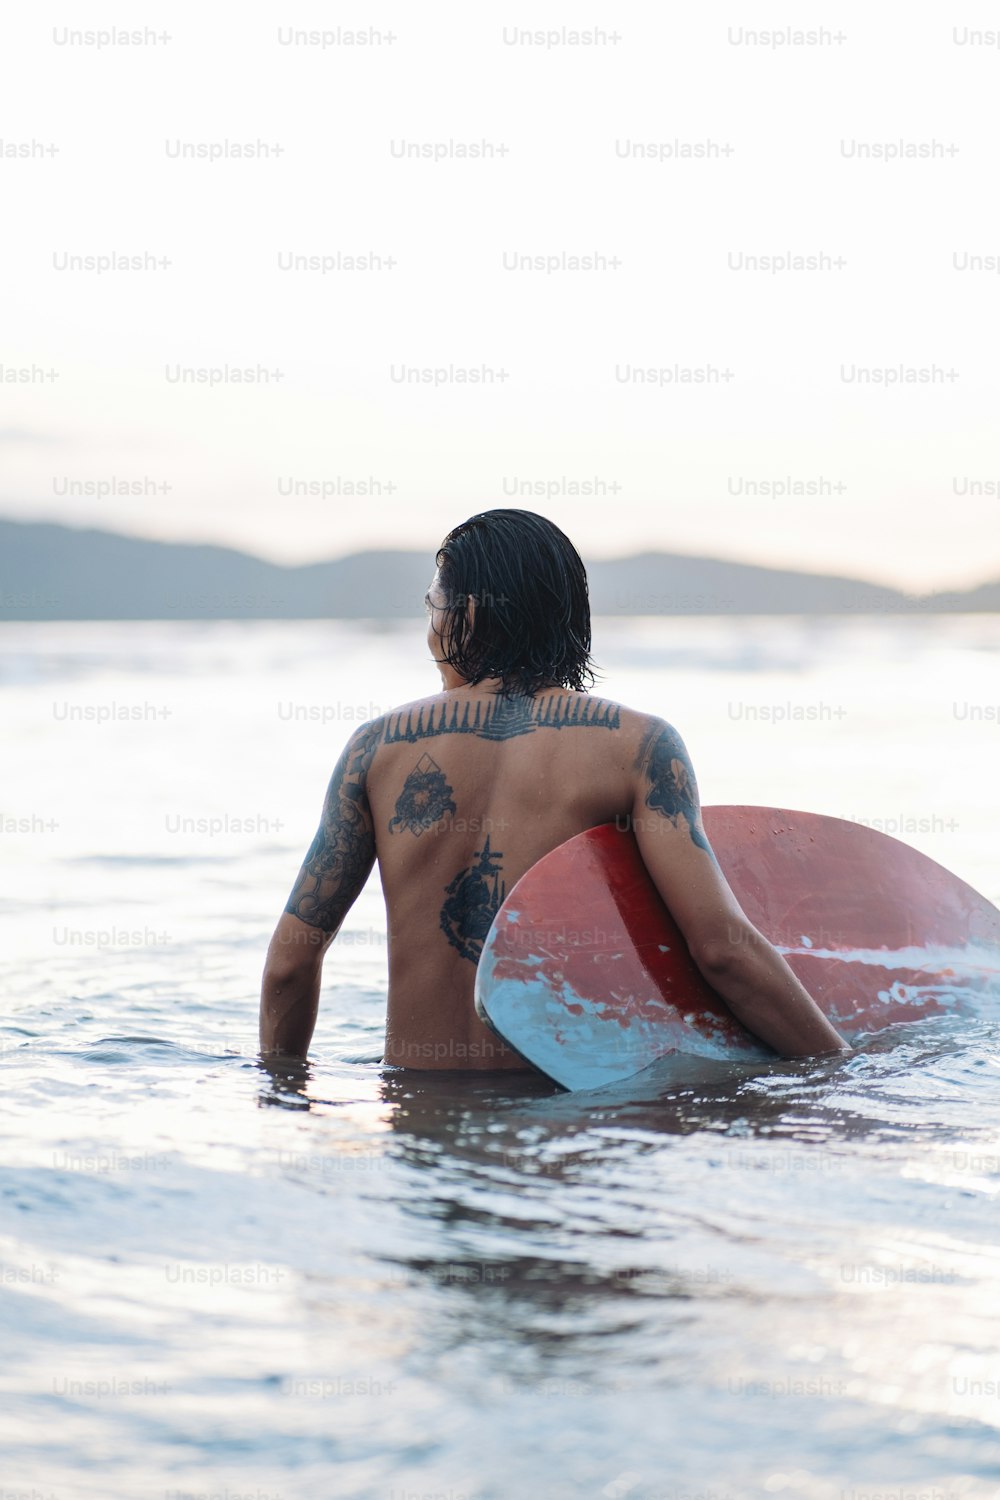 Un uomo che tiene una tavola da surf nell'acqua